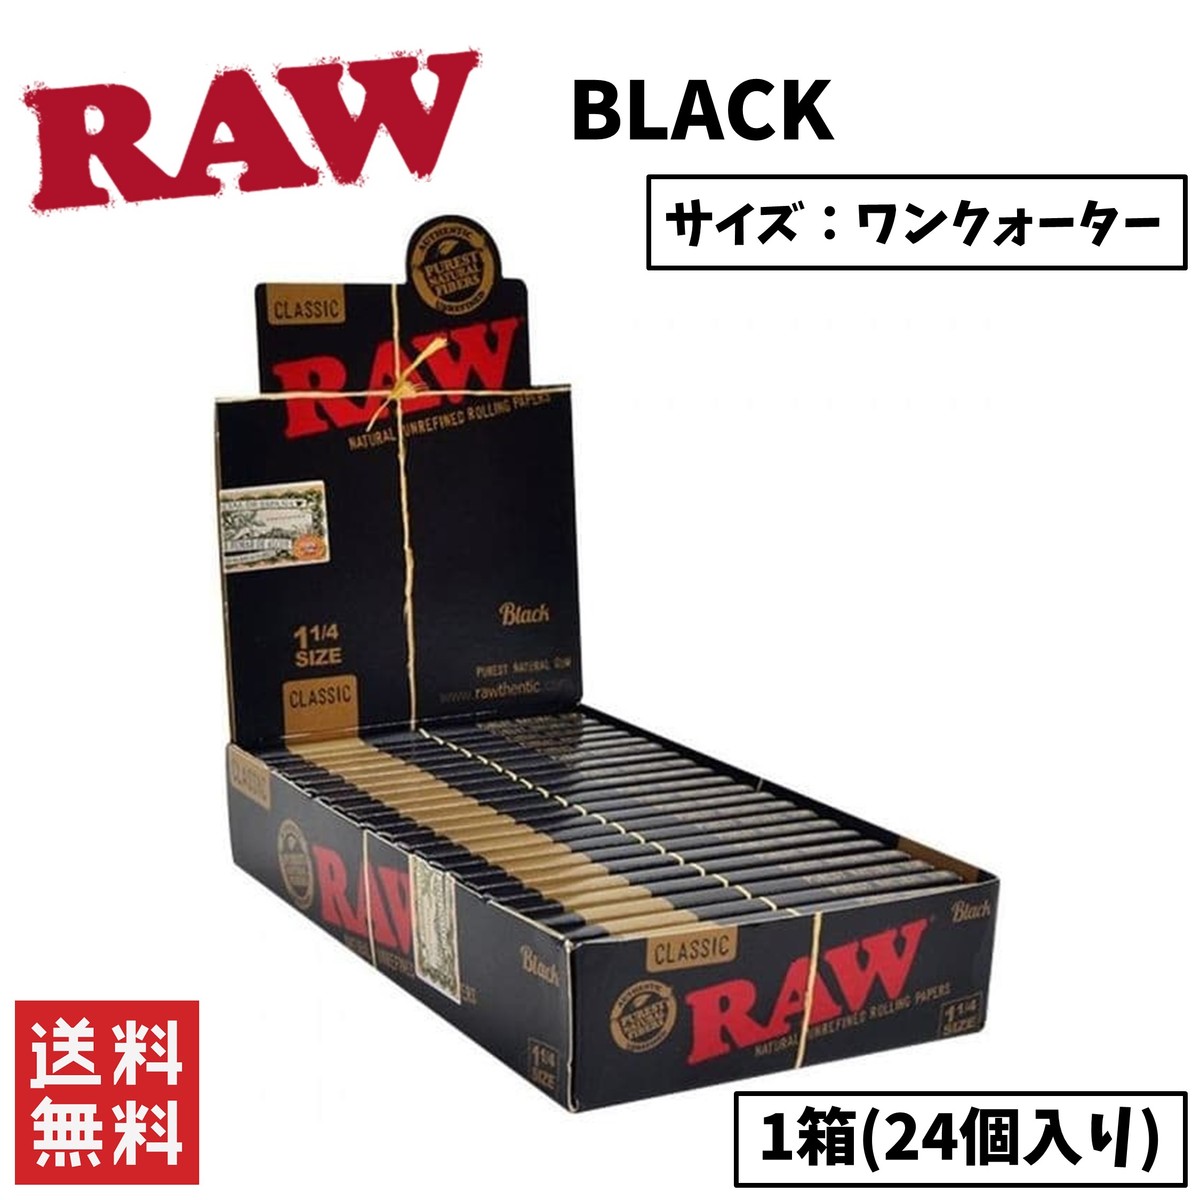 RAW CLASSIC BLACK クラシック ブラック 1 1/4 ワンクオーター ペーパー 1箱 24個入り 喫煙具 手巻きたばこ ペーパー